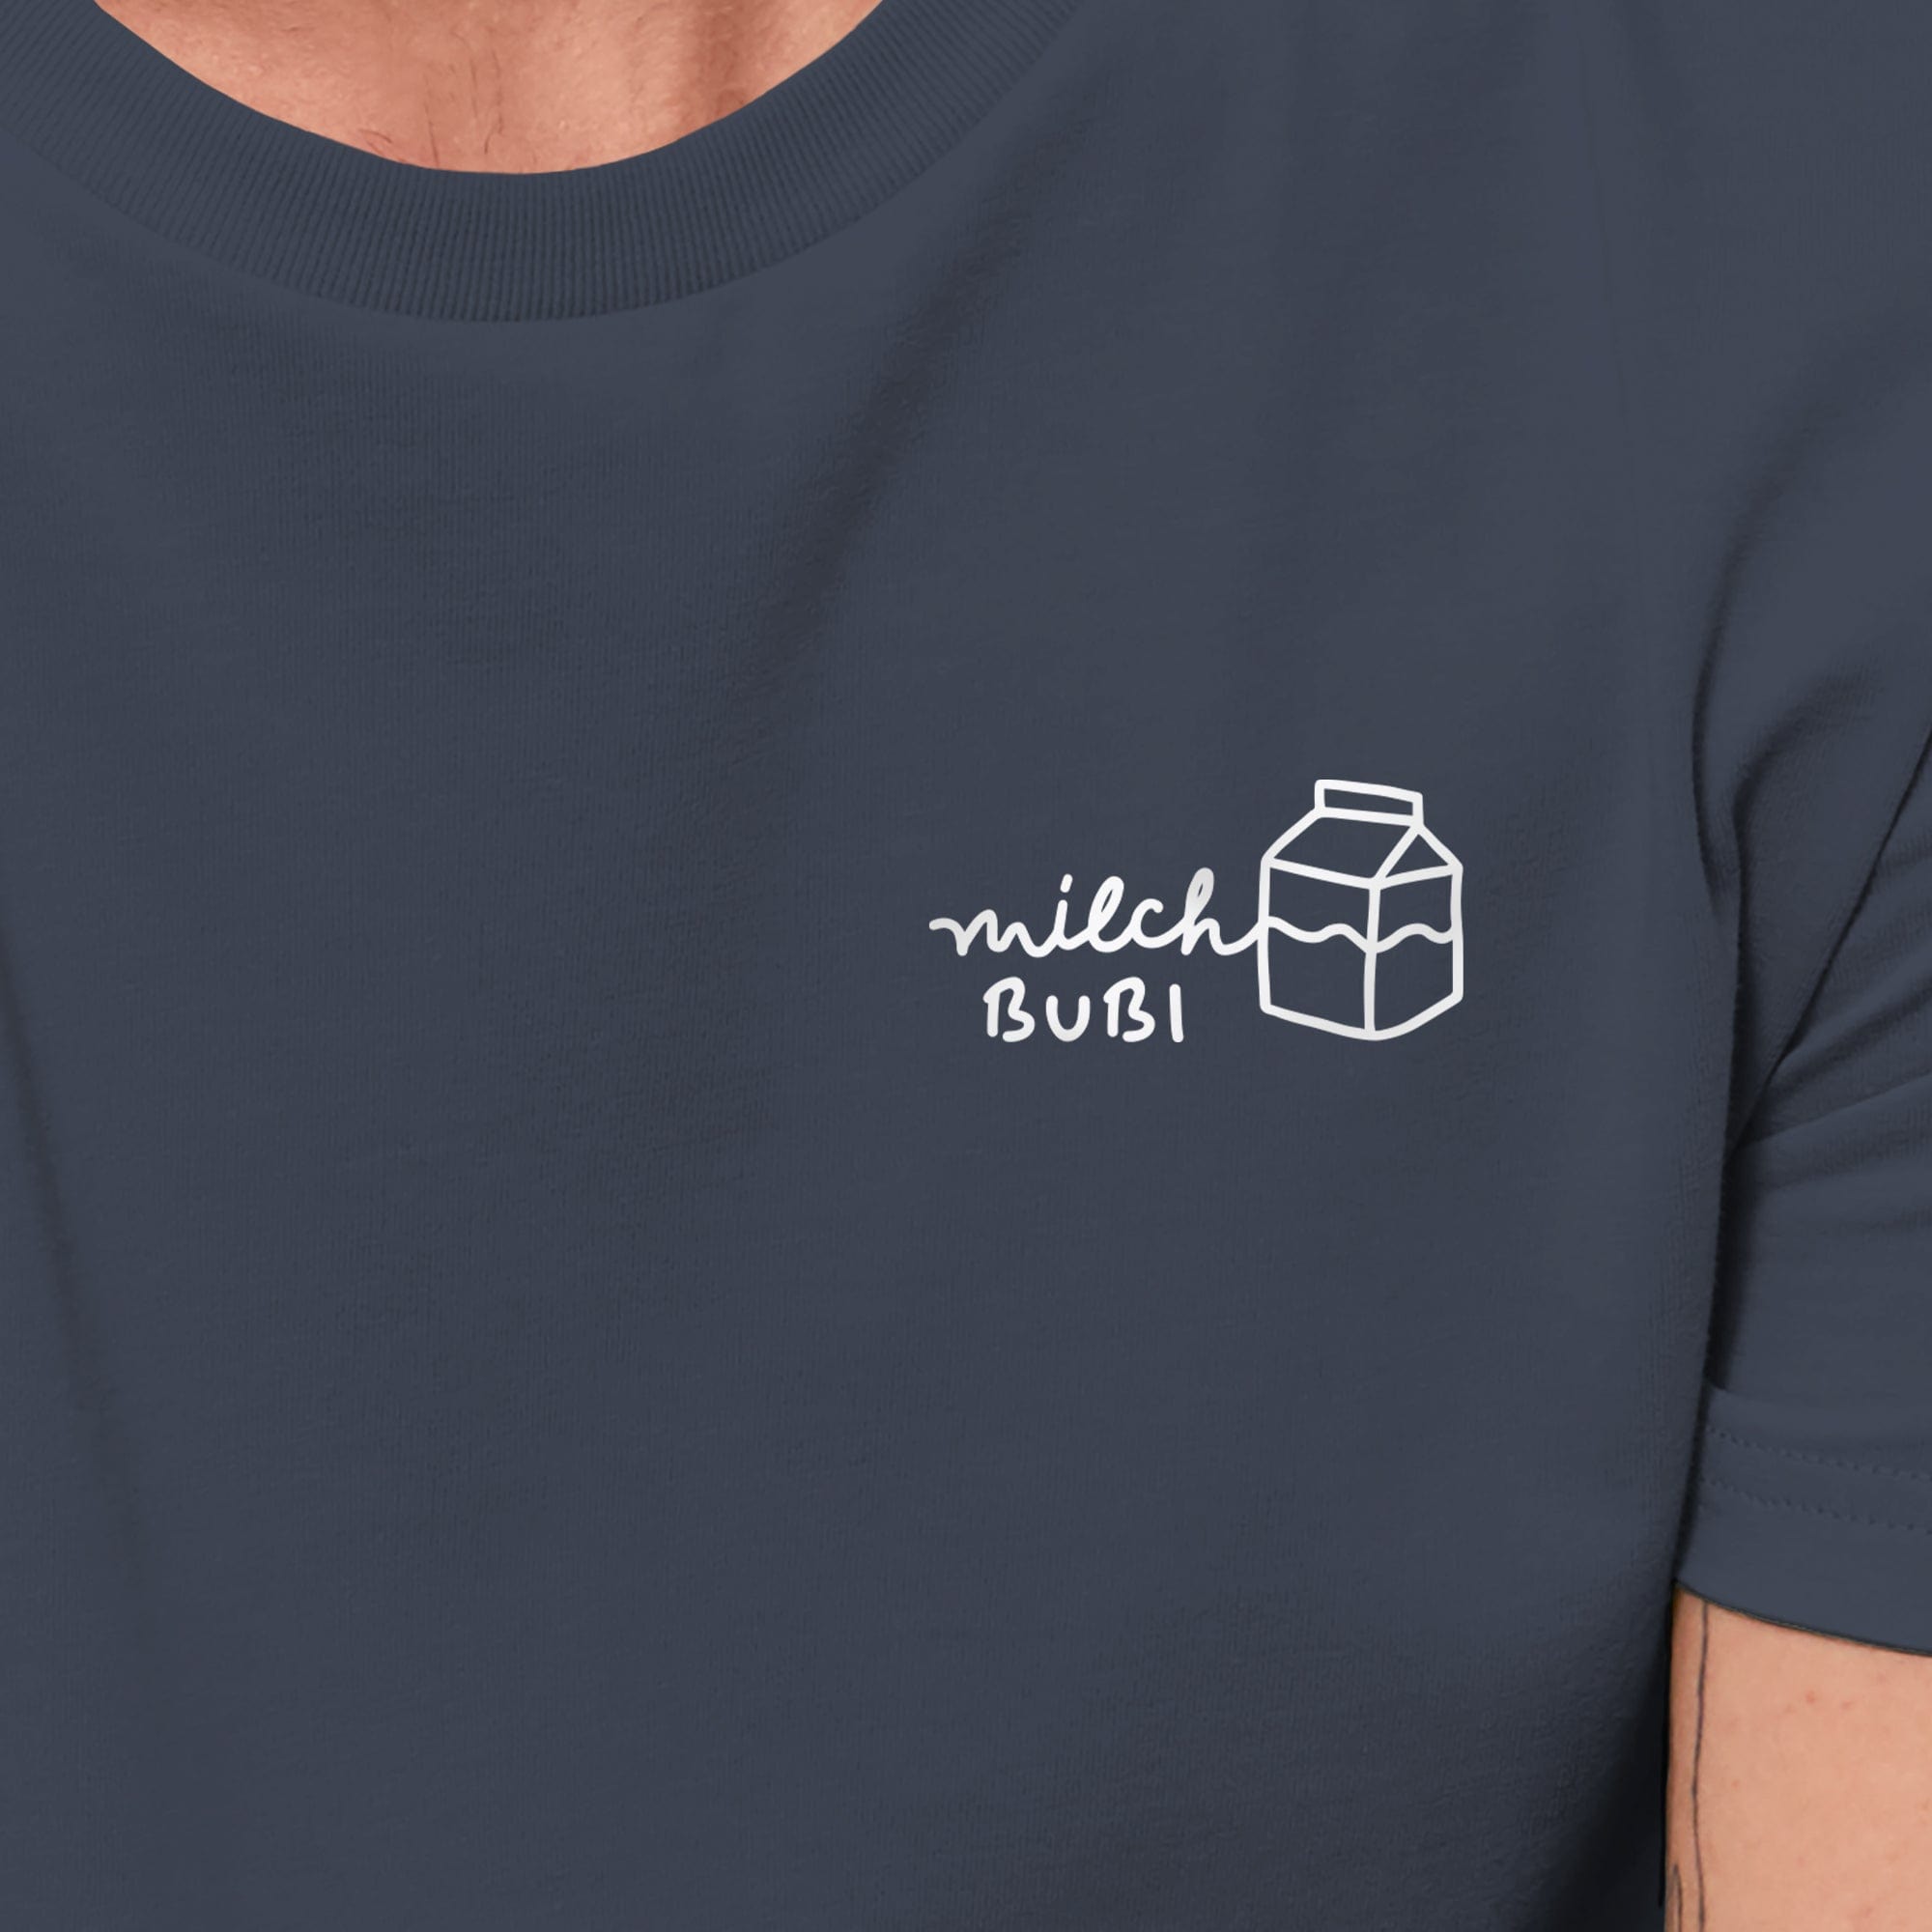 HEITER & LÄSSIG T-Shirt "Milch-Bubi" - aus nachhaltiger und fairer Produktion